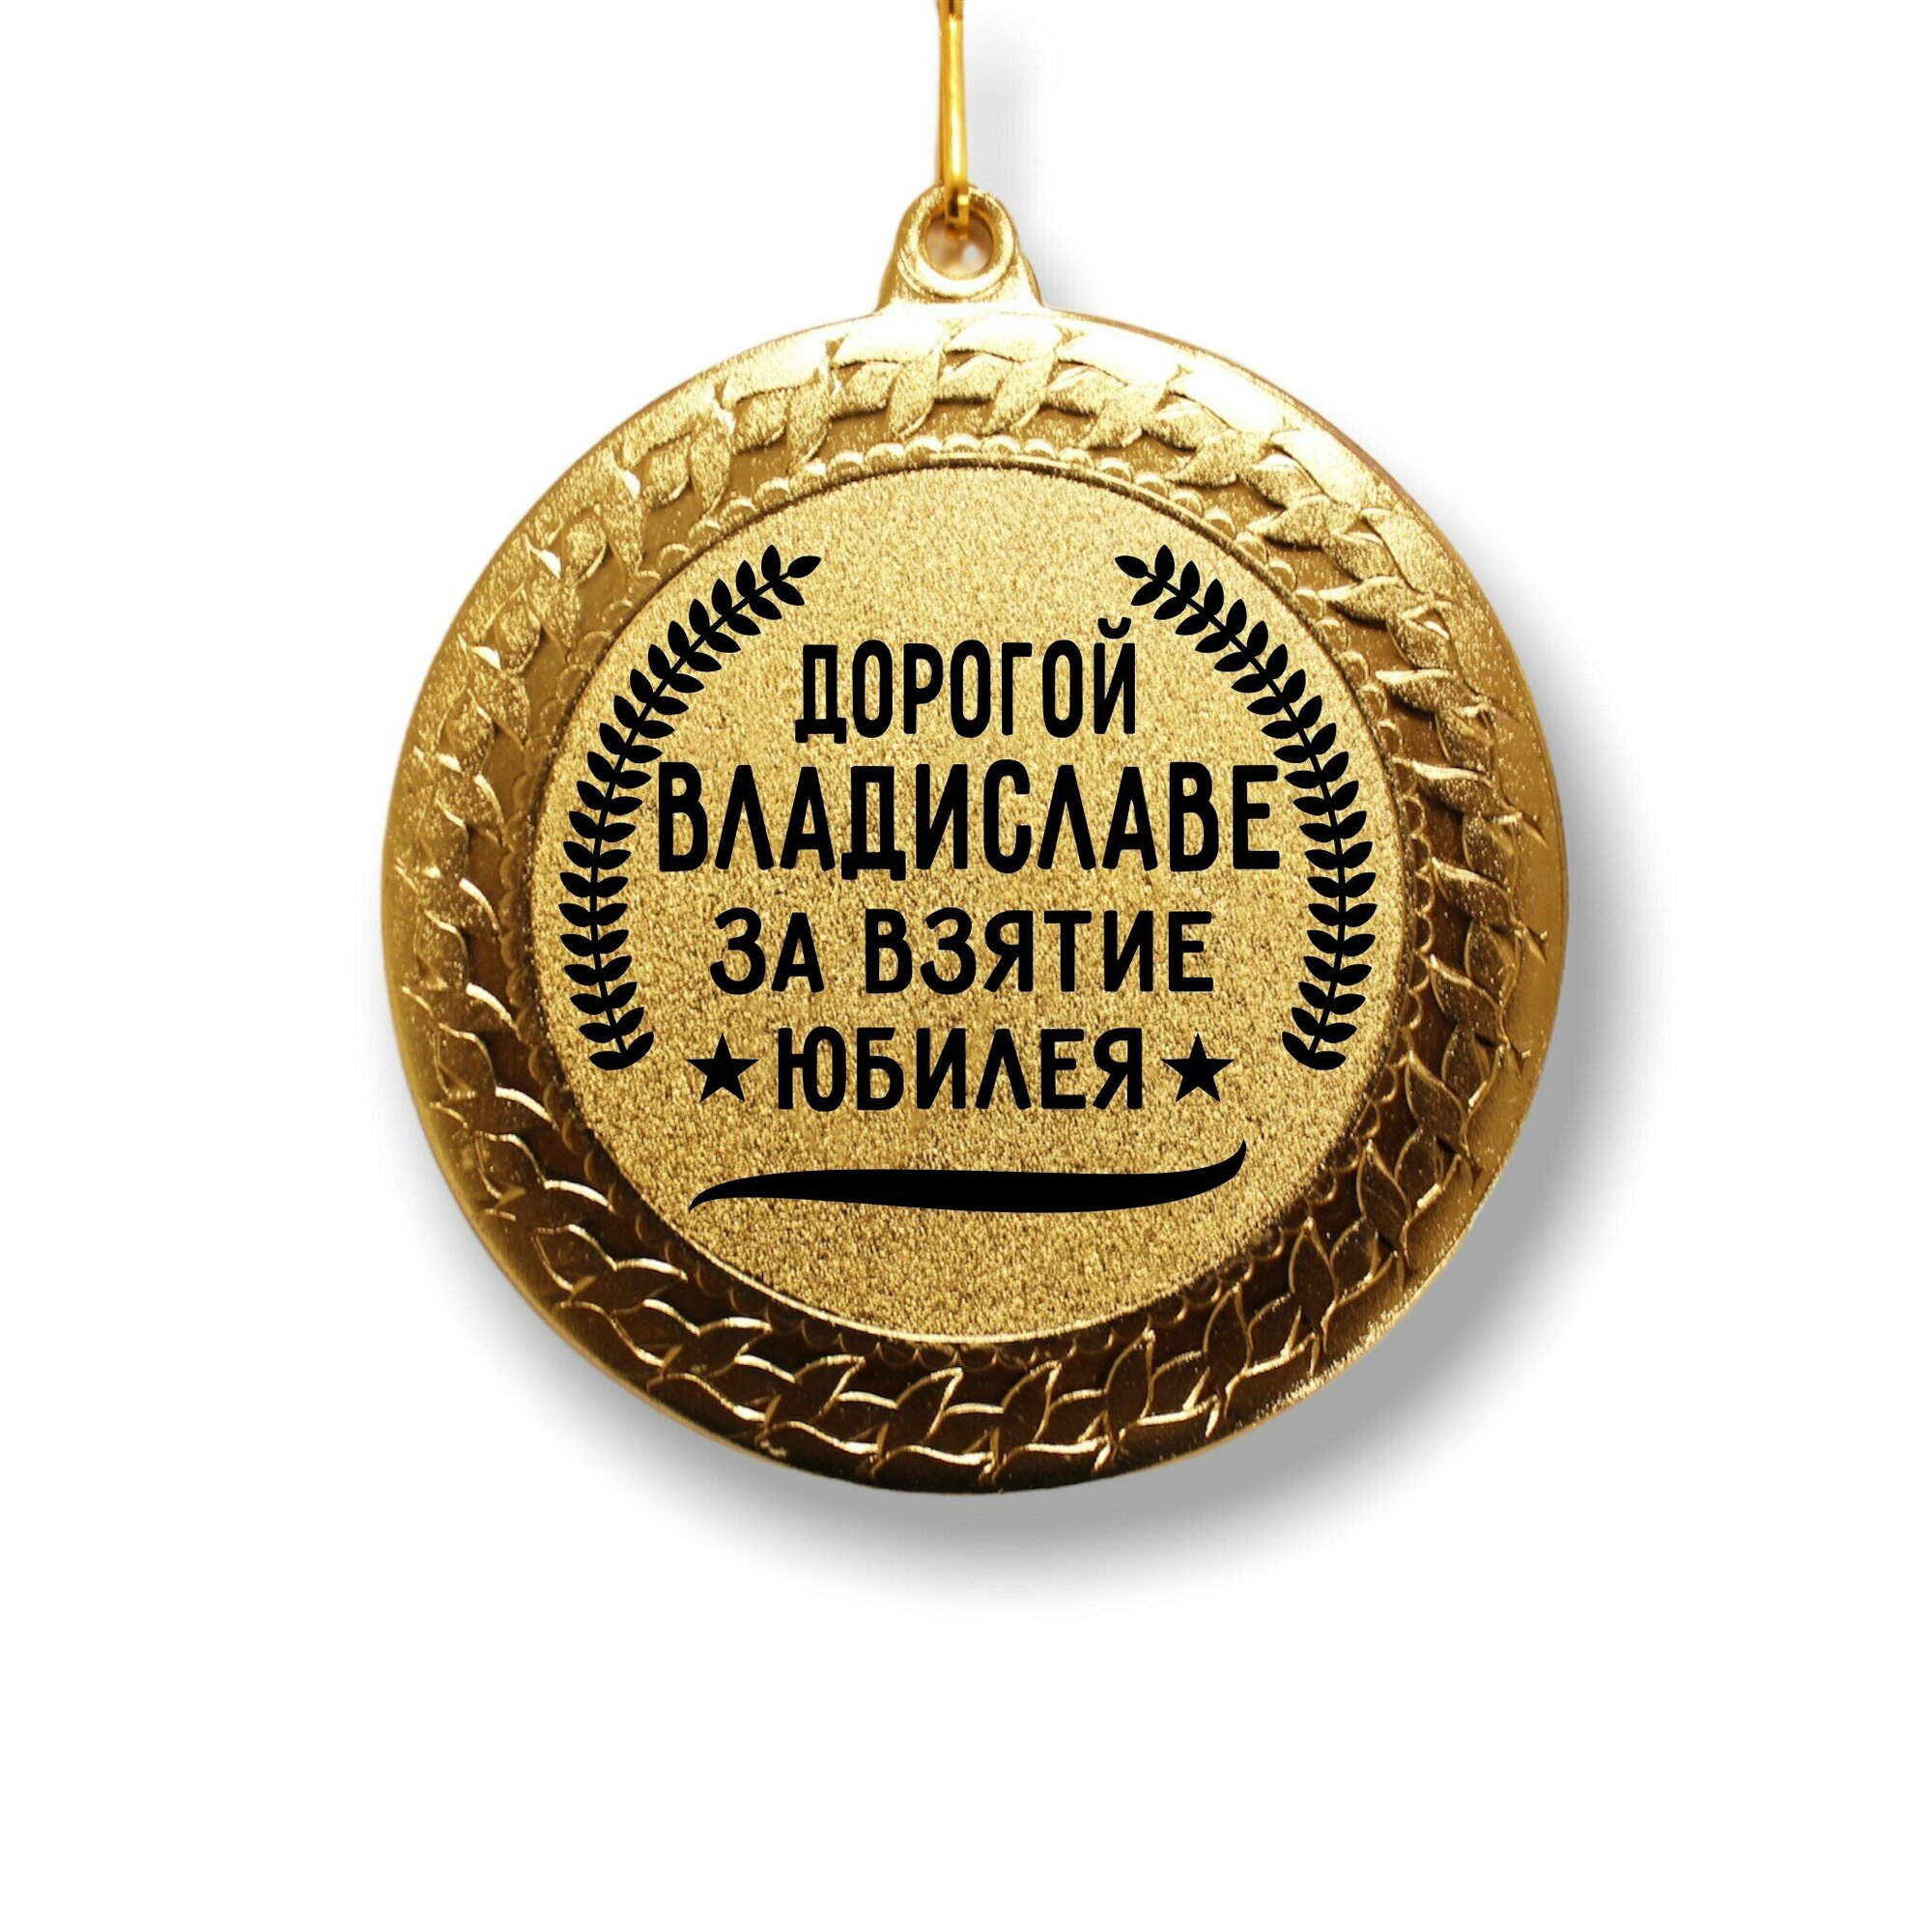 Медаль за взятие юбилея " Владиславе "